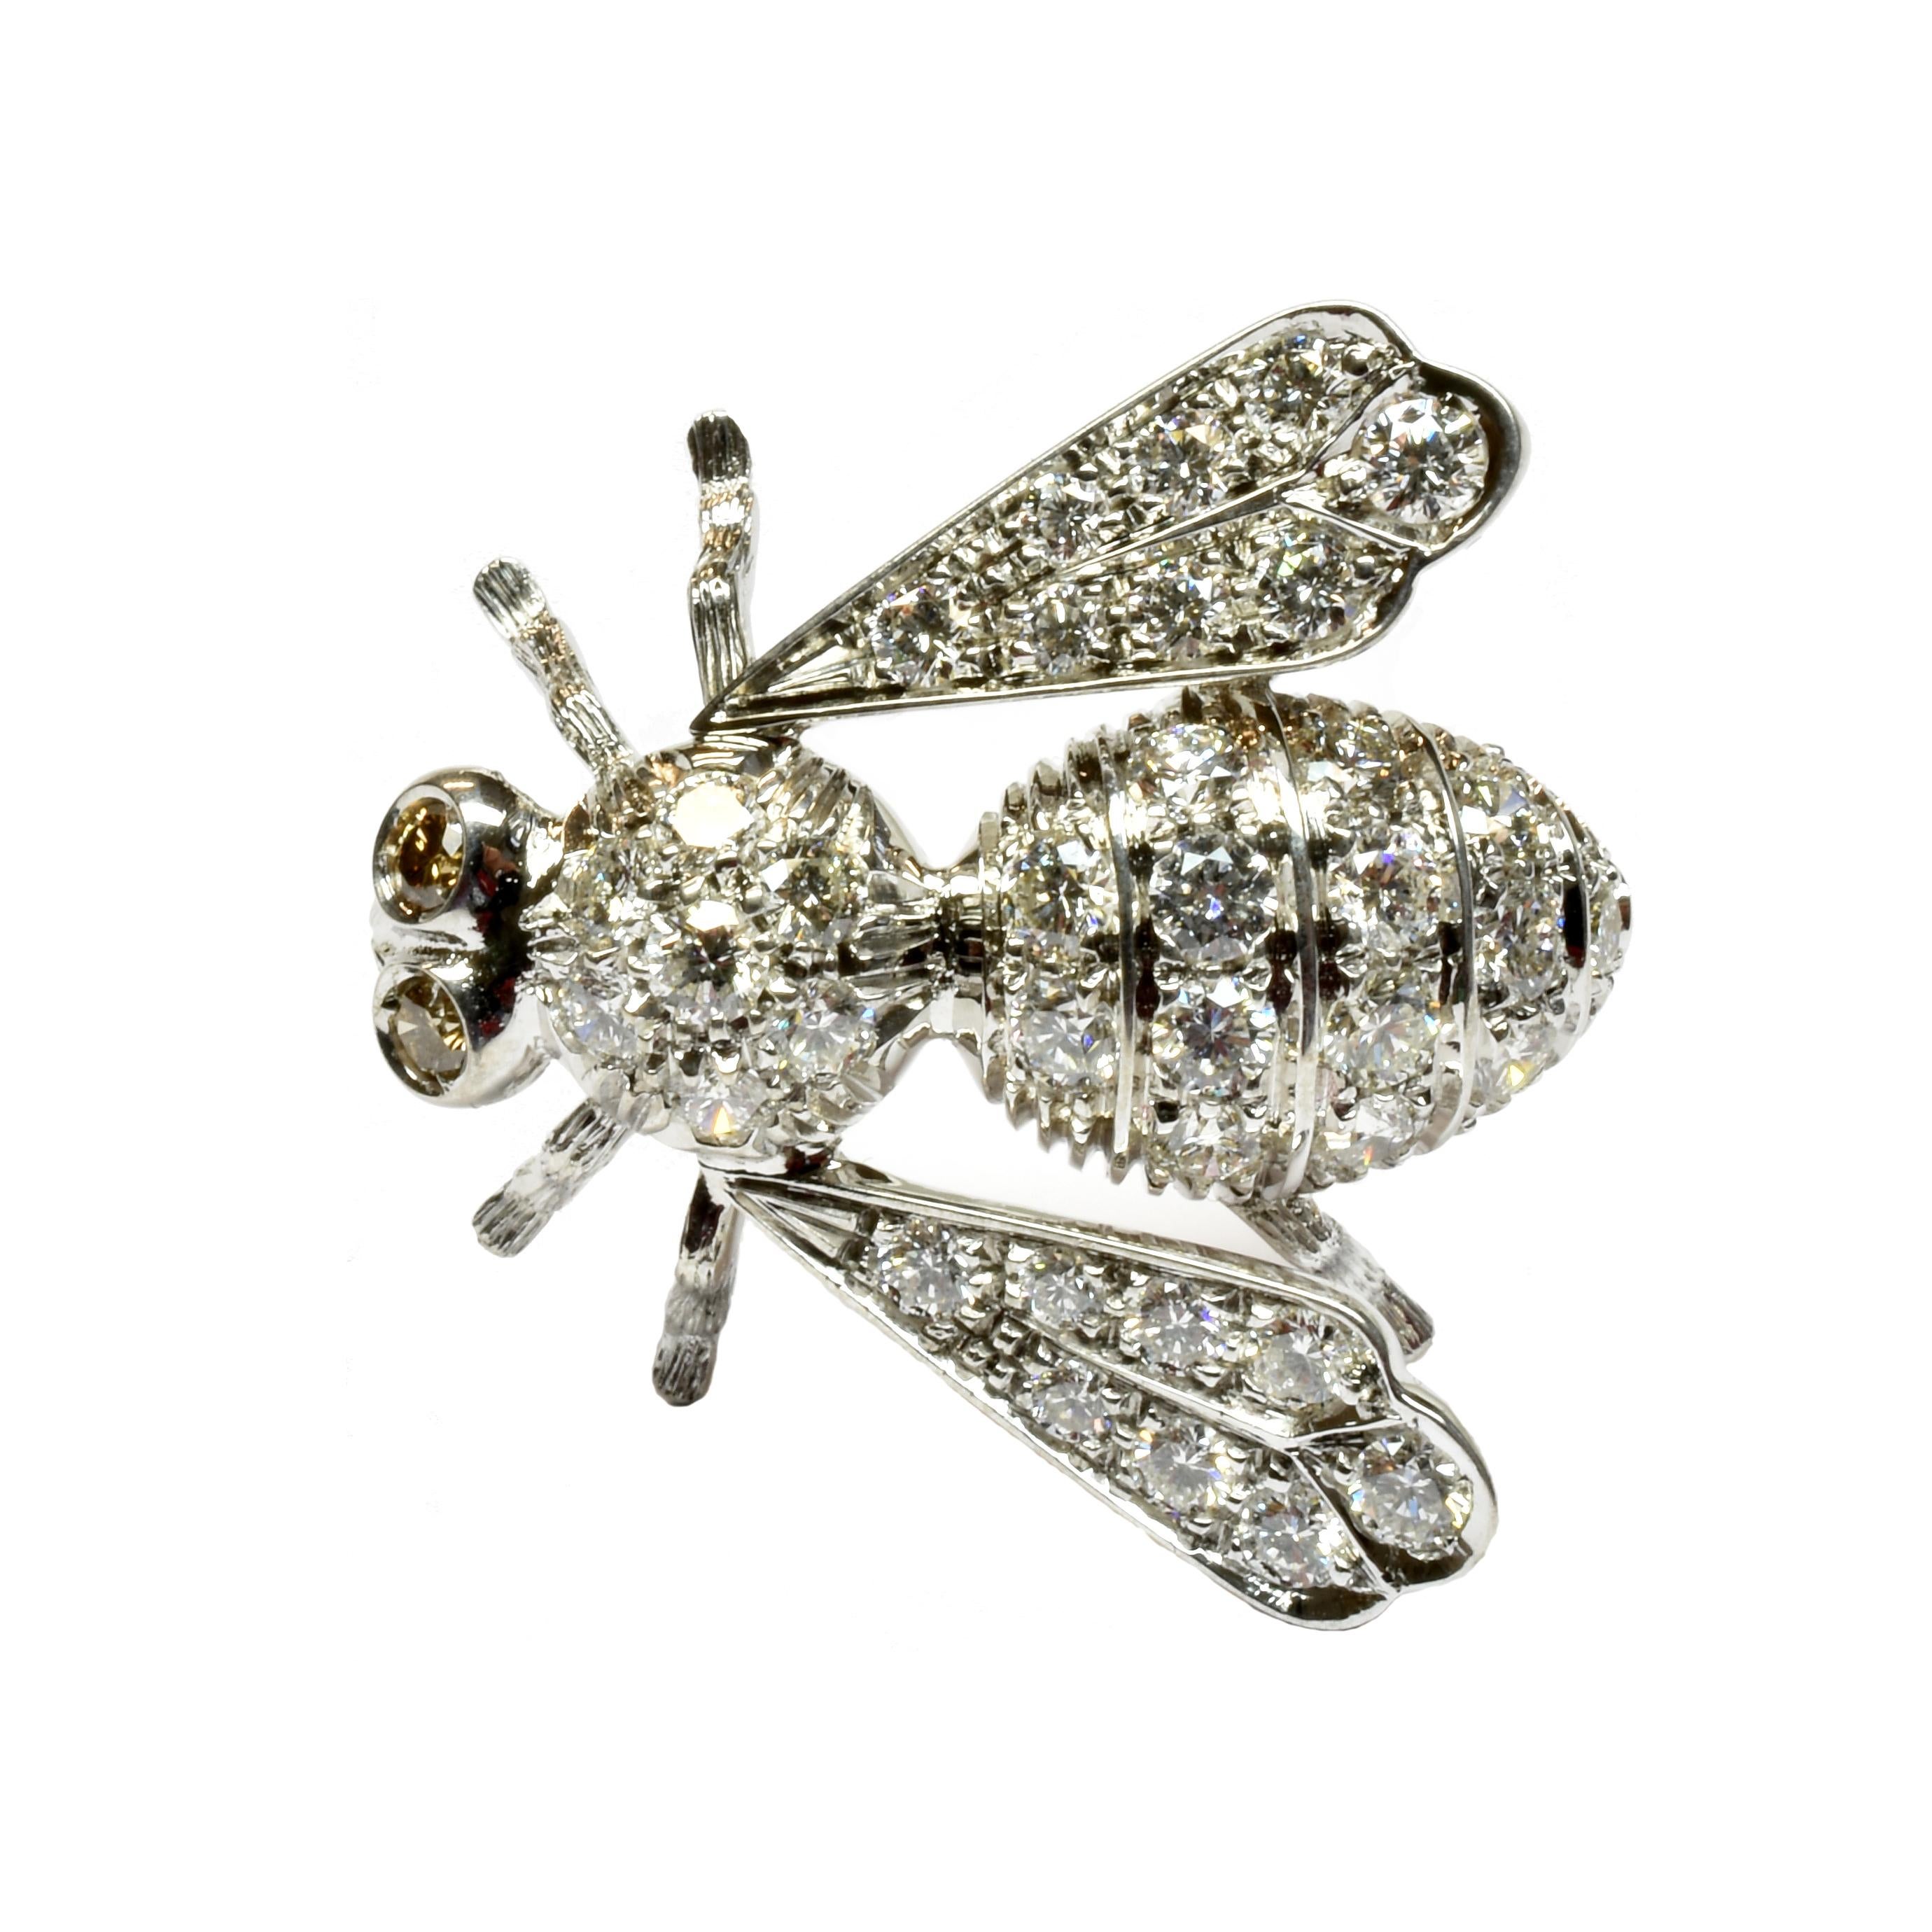 broche abeille en or 18 carats avec des diamants blancs et des diamants champagne.
Fabriqué à la main dans notre atelier de Valenza, en Italie.
Il est parfait sur une veste d'affaires ou une robe de cocktail. 
Cette jolie broche peut être réalisée